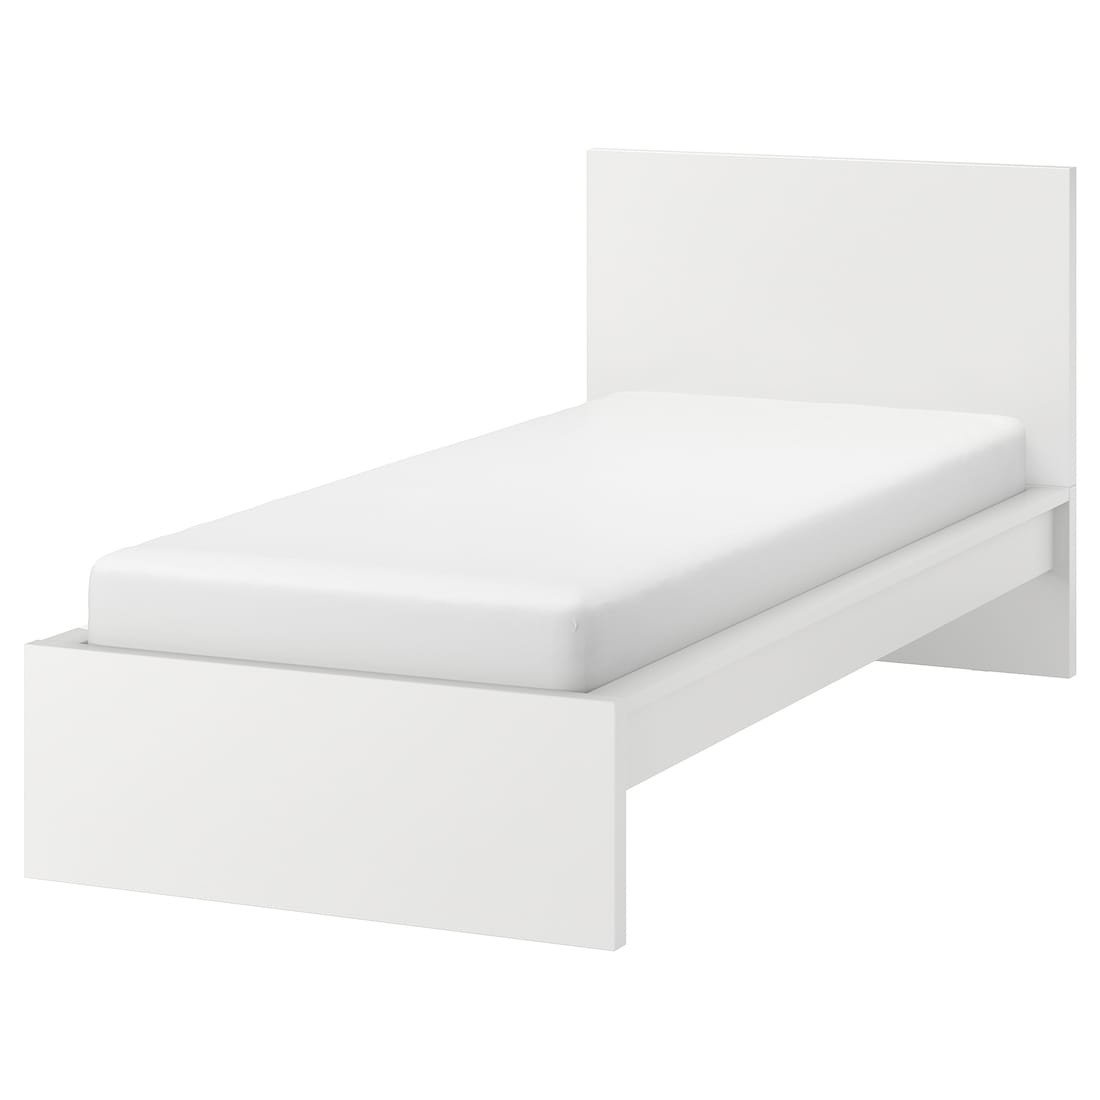 MALM МАЛЬМ Ліжко односпальне, високе, білий / Ліндбаден, 90x200 см